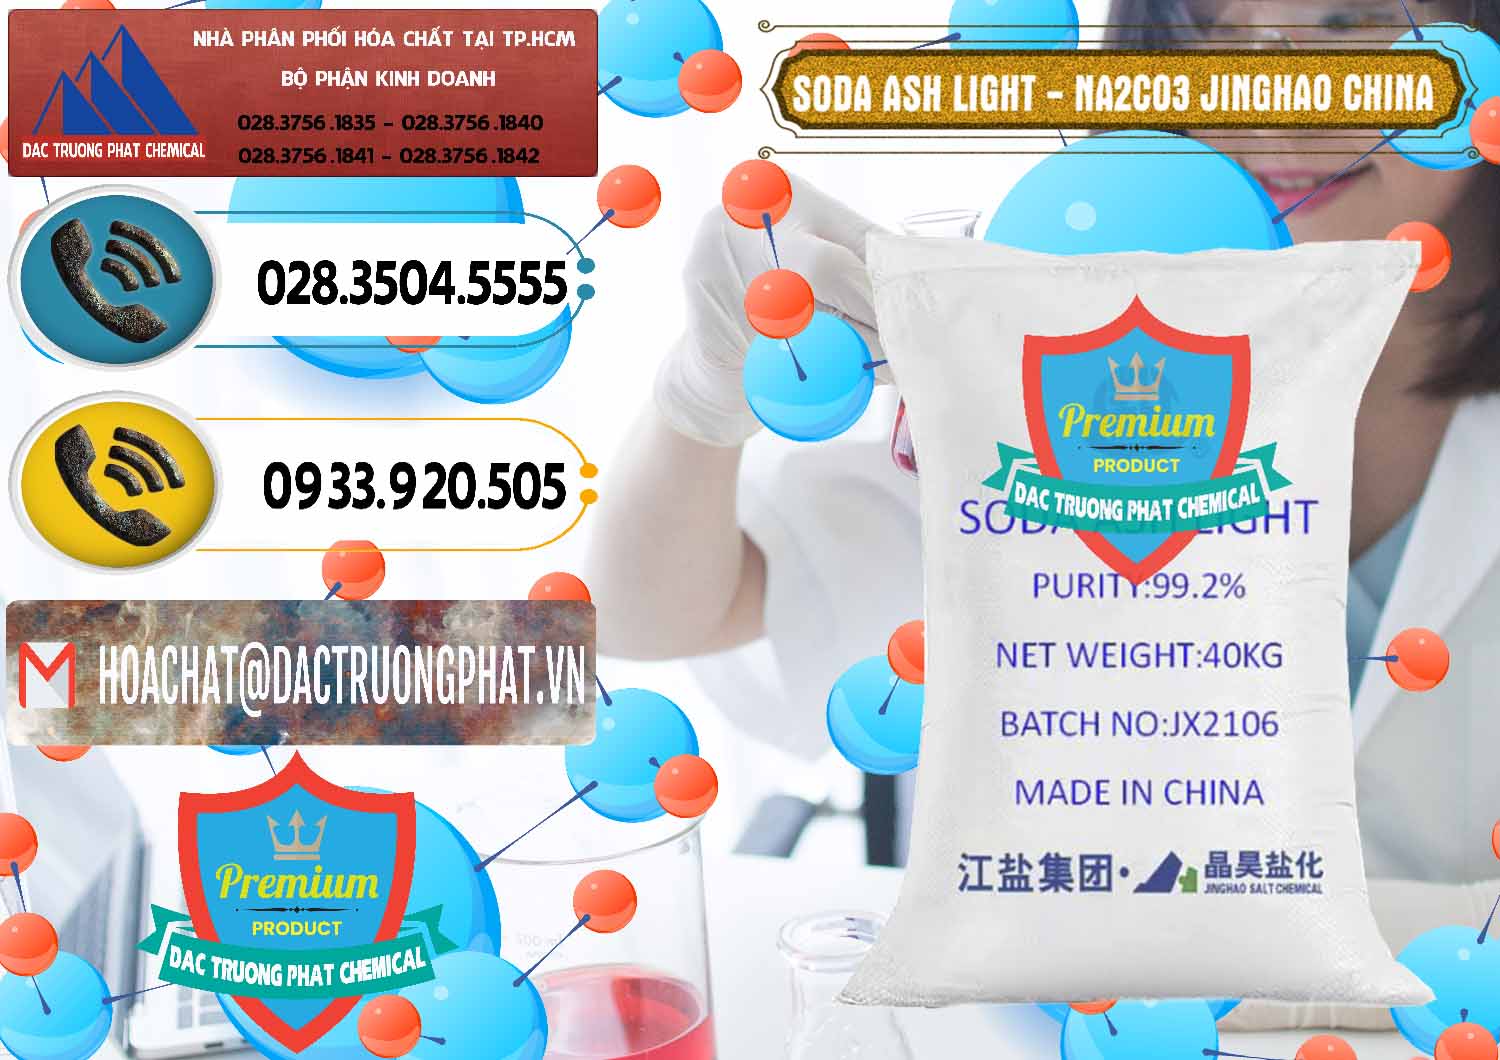 Nơi bán Soda Ash Light - NA2CO3 Jinghao Trung Quốc China - 0339 - Đơn vị nhập khẩu & cung cấp hóa chất tại TP.HCM - hoachatdetnhuom.vn